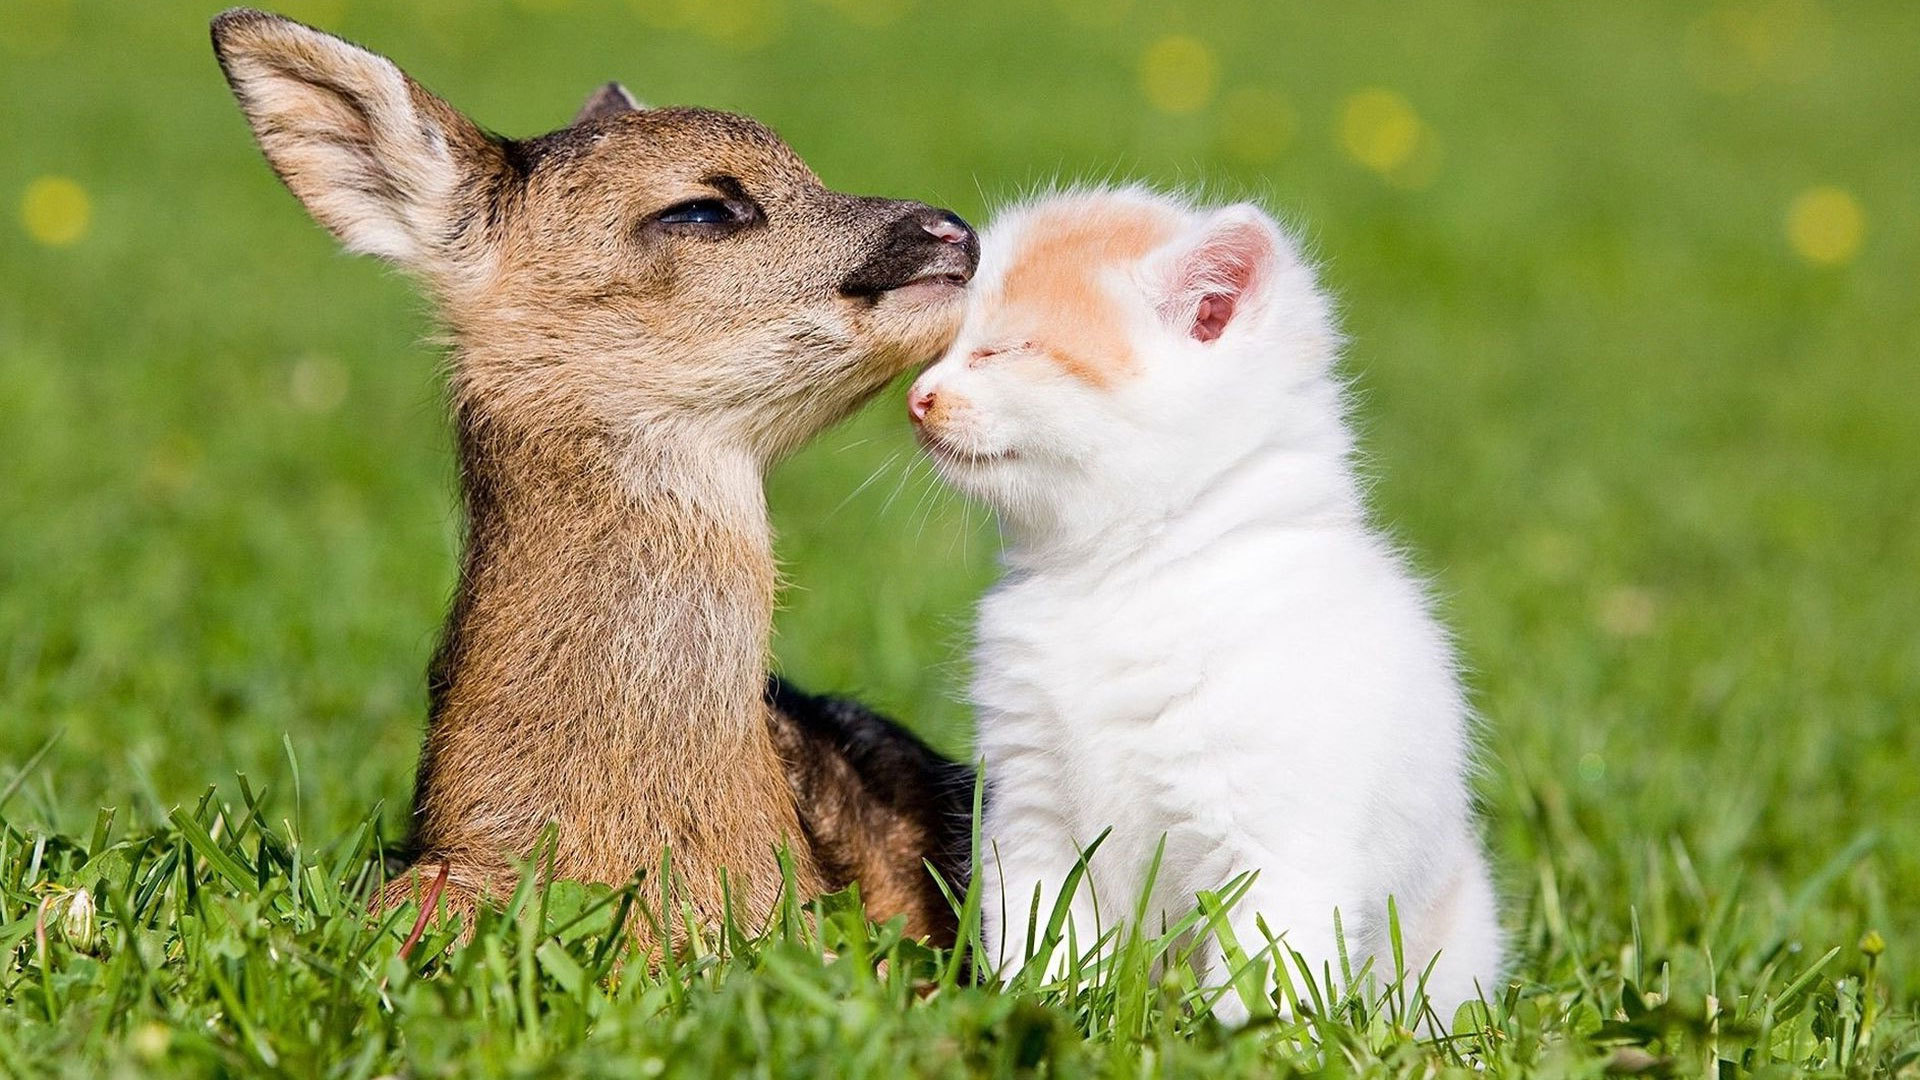 Animals___Cats_Kitten_and_baby_deer_046773_.jpg